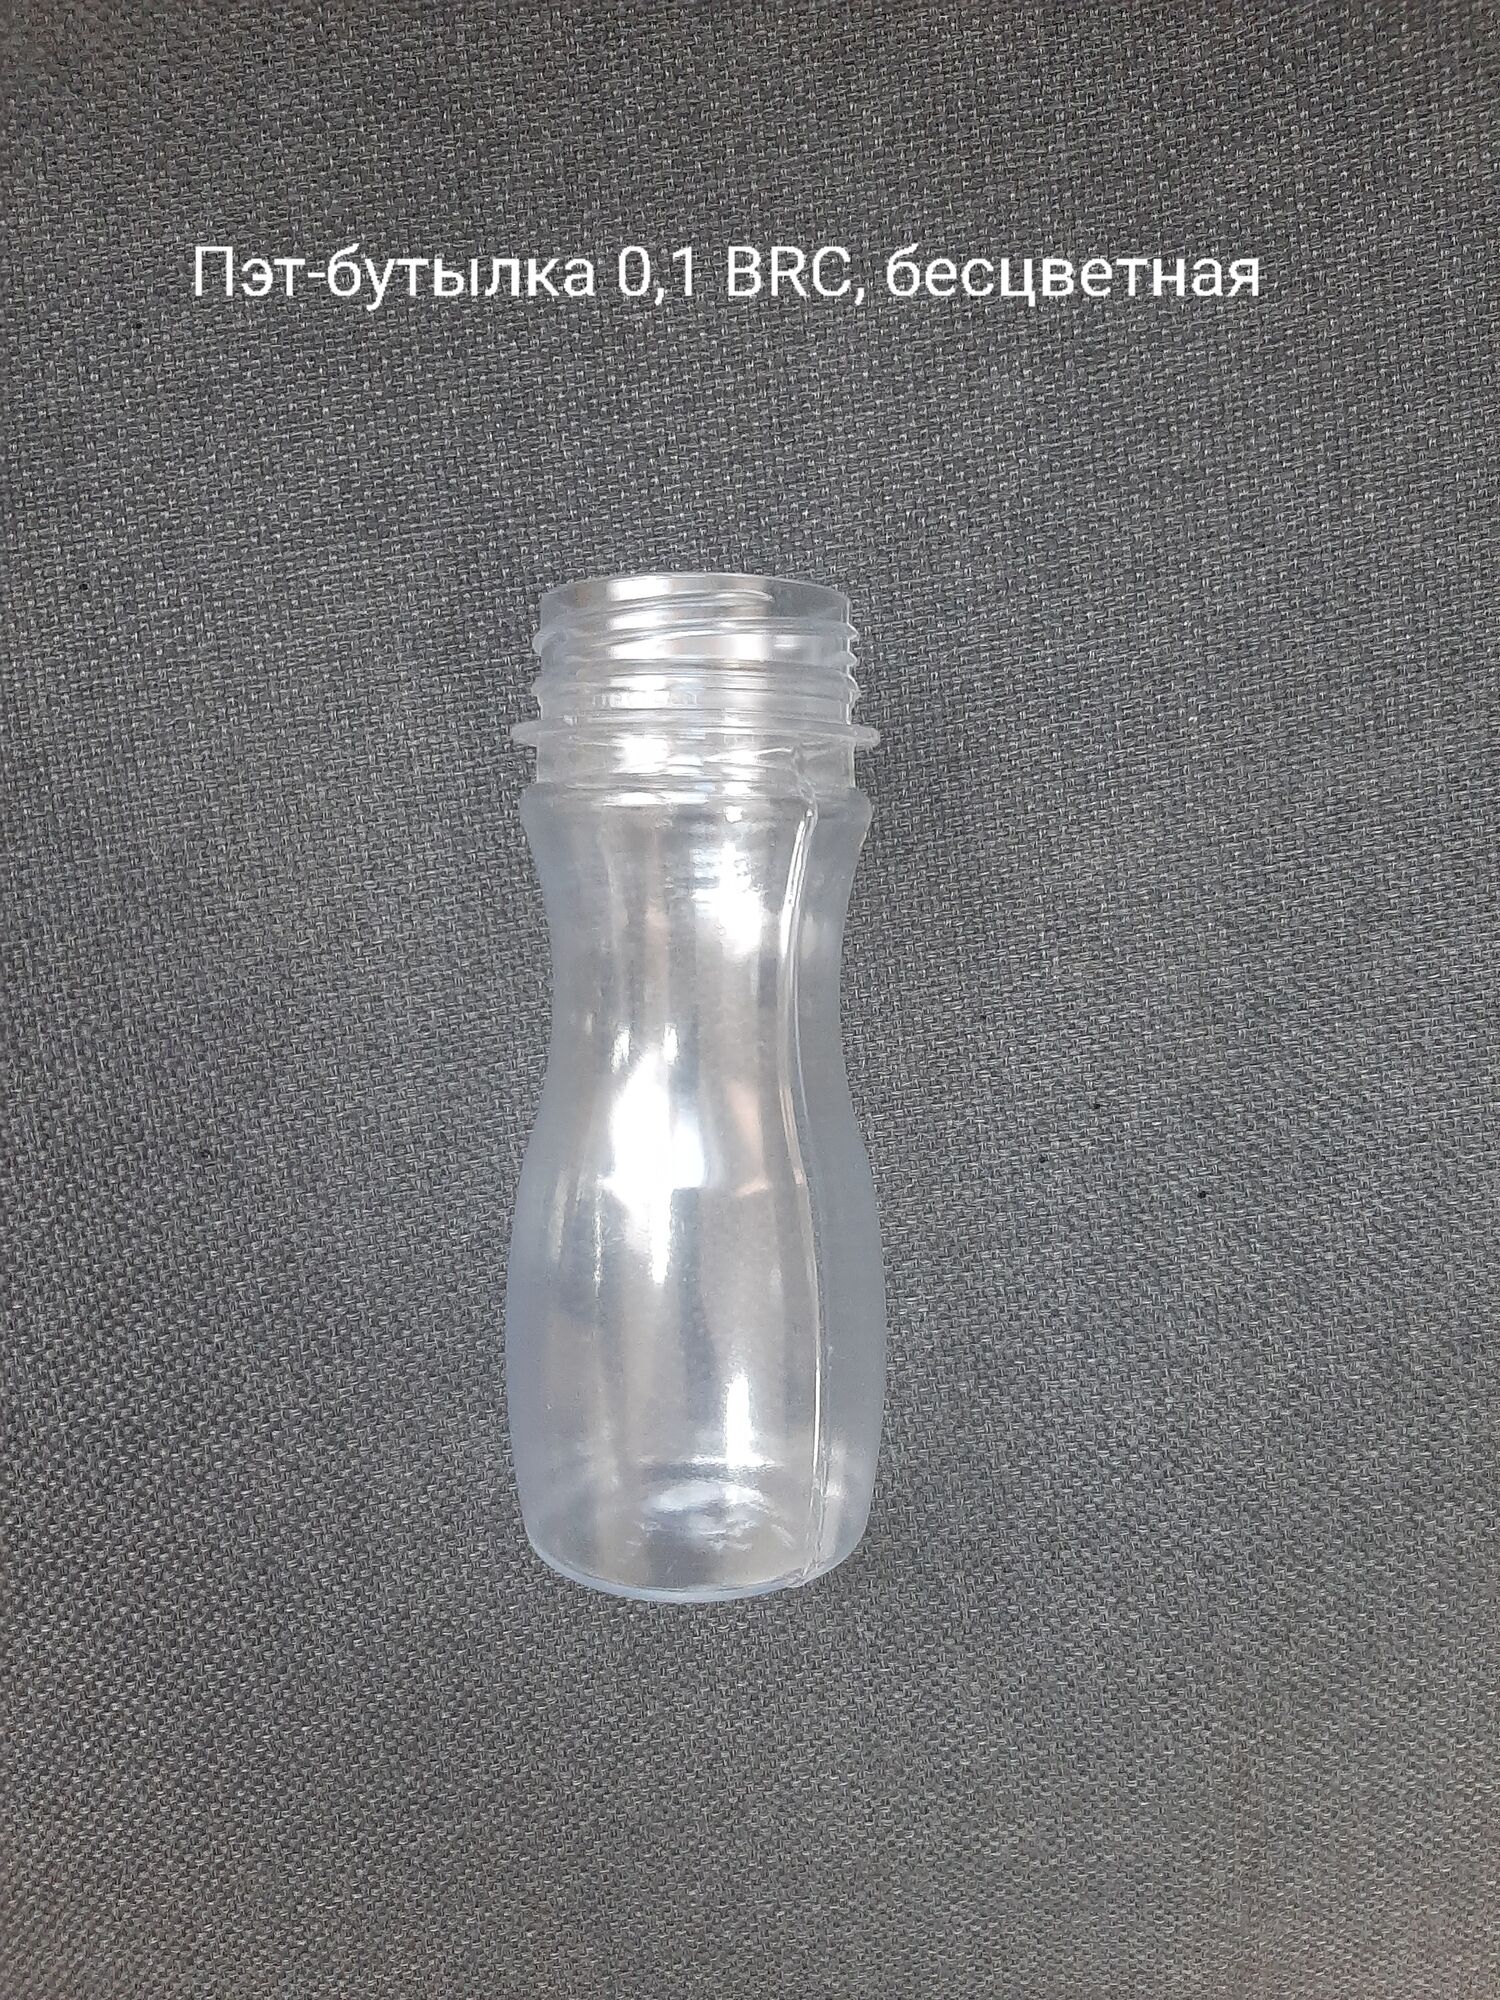 Пэт-бутылка 0,1 BRC, бесцветная (400 шт в упаковке) вес 14 гр.